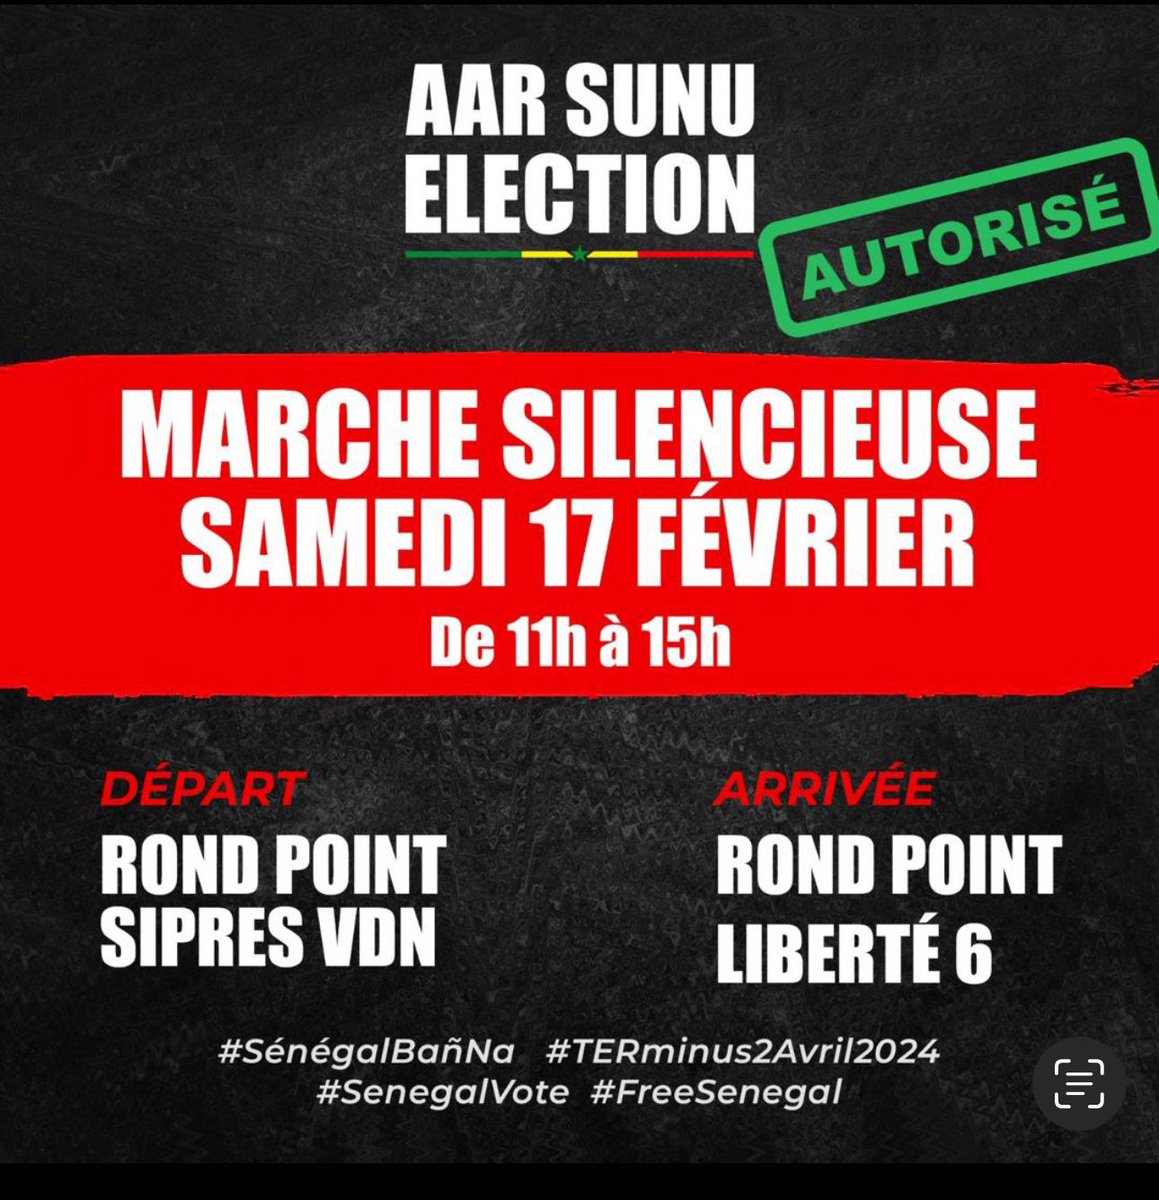 Souba kou nieuwoul complice geu 
Se donne rendez-vous demain 
Occupons le terrain à partir de 10h 
Sénégal bougnou book 
Sénégal pour les Sénégalais 
#FreeSenega